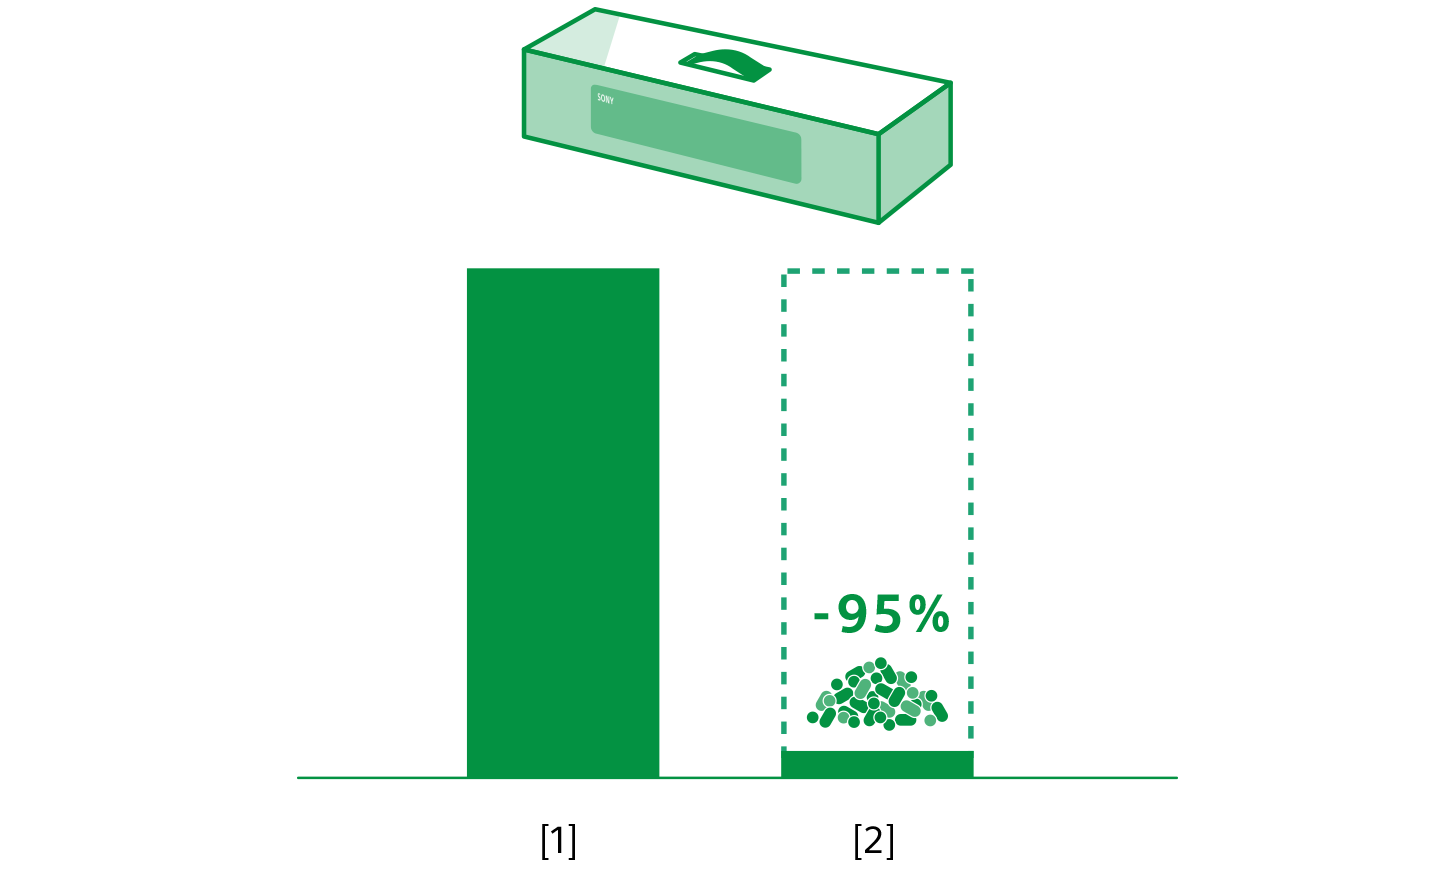 サウンドバーのパッケージを示す図と、プラスチックの使用量が65%減少したことを示す2つの棒グラフ。